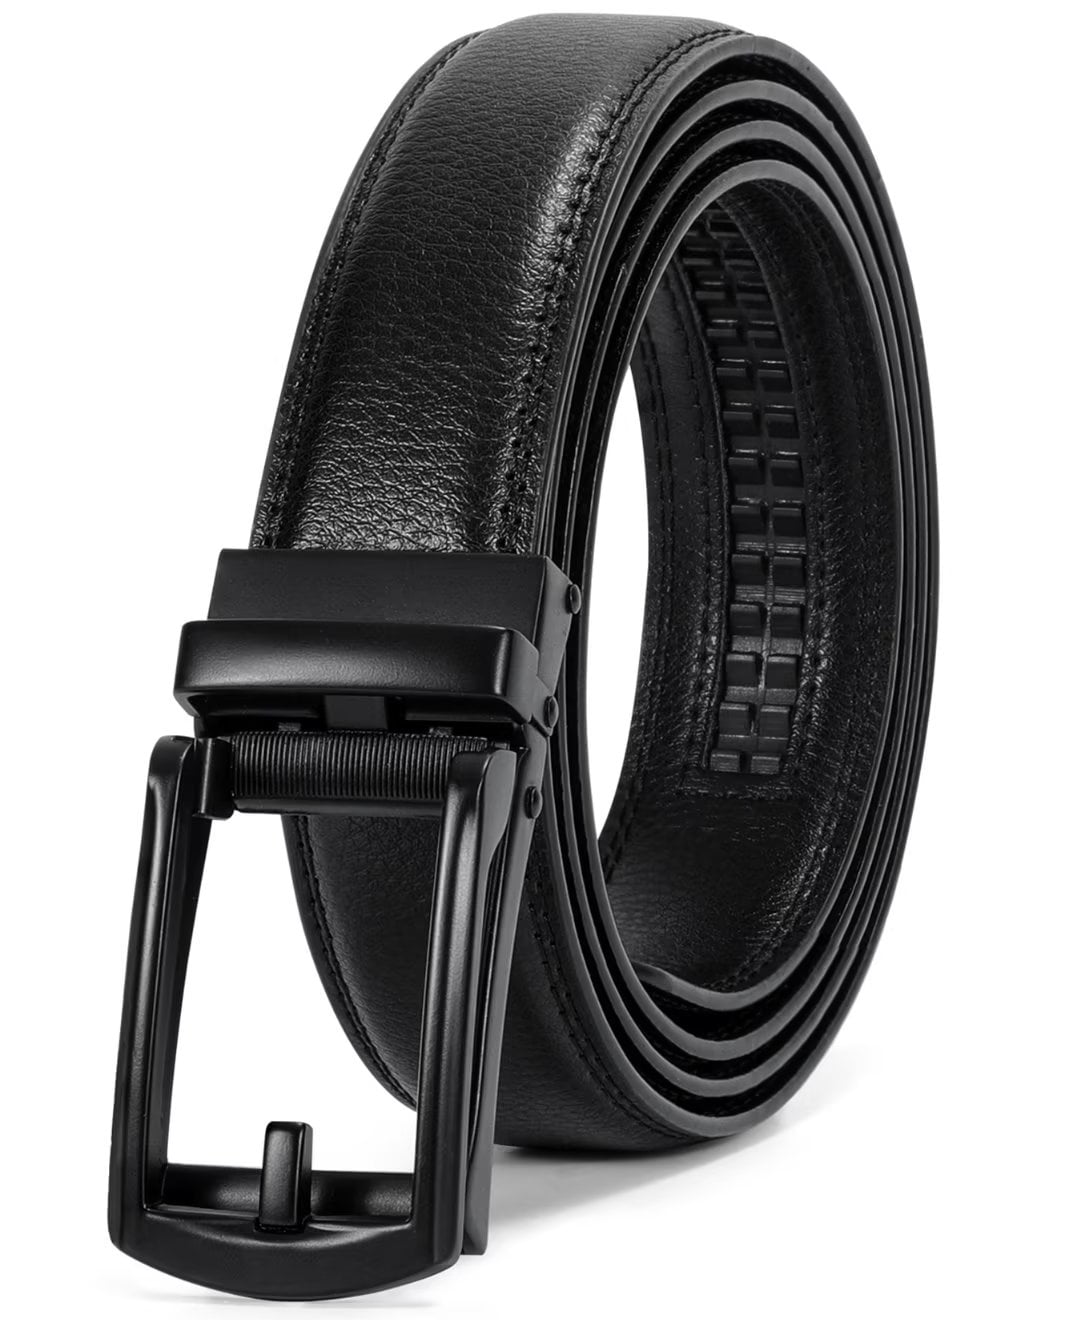 Jasgood Click Belts For Men Leather Ratchet Dress Belt Adjustable Trim